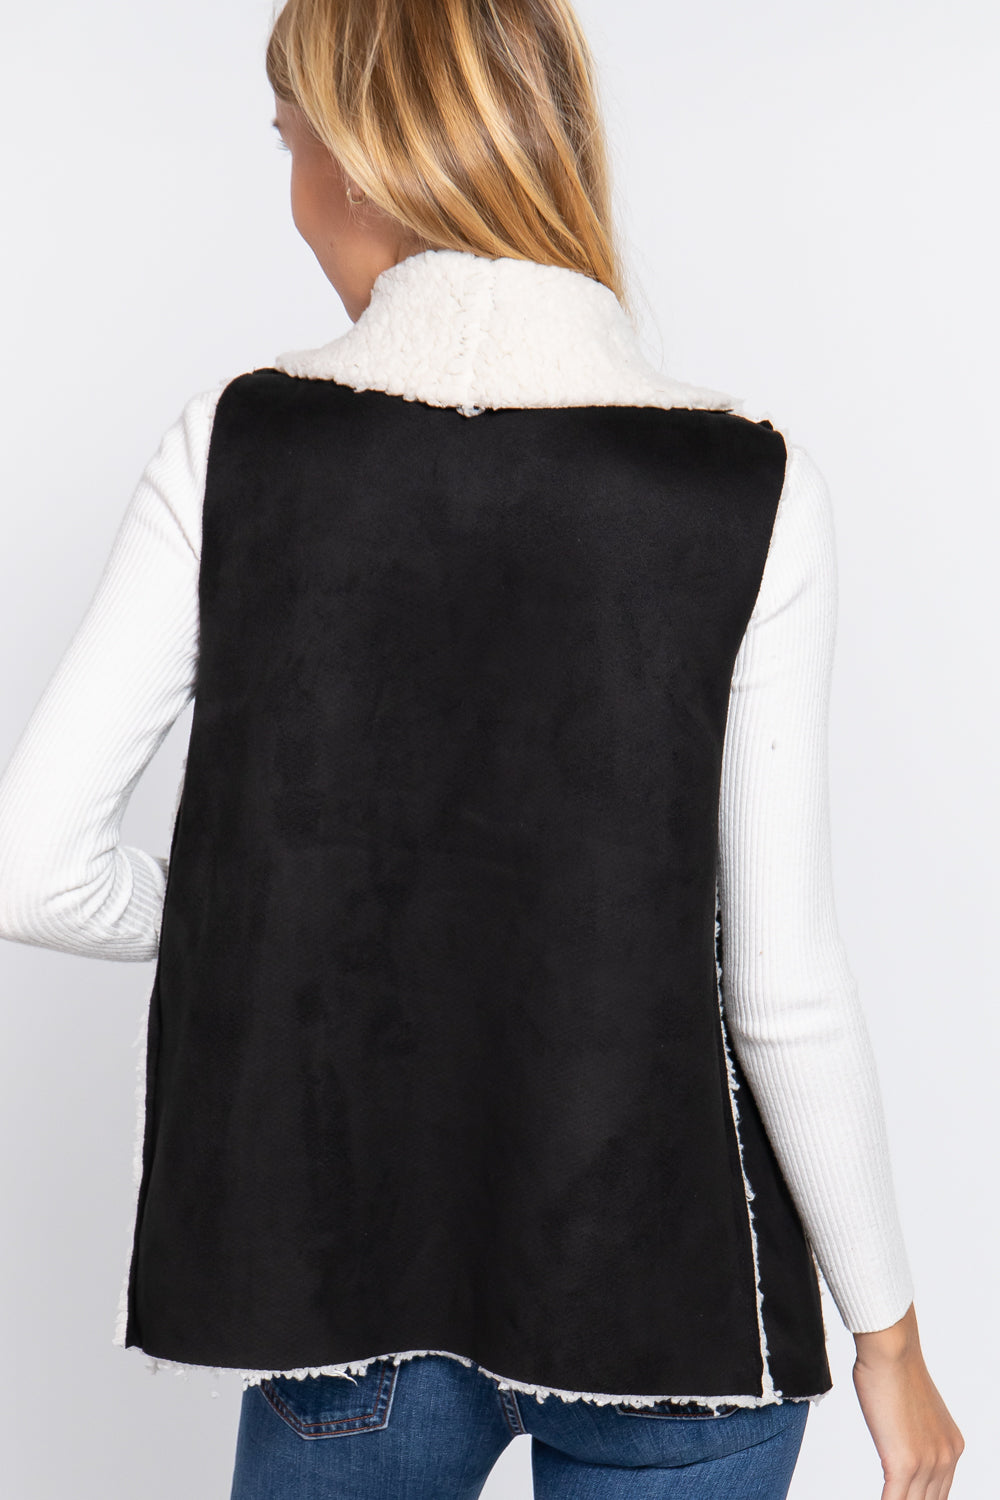 Shawl Faux Suede Fur Bonded Vest - 3 colors - women's vest at TFC&H Co.